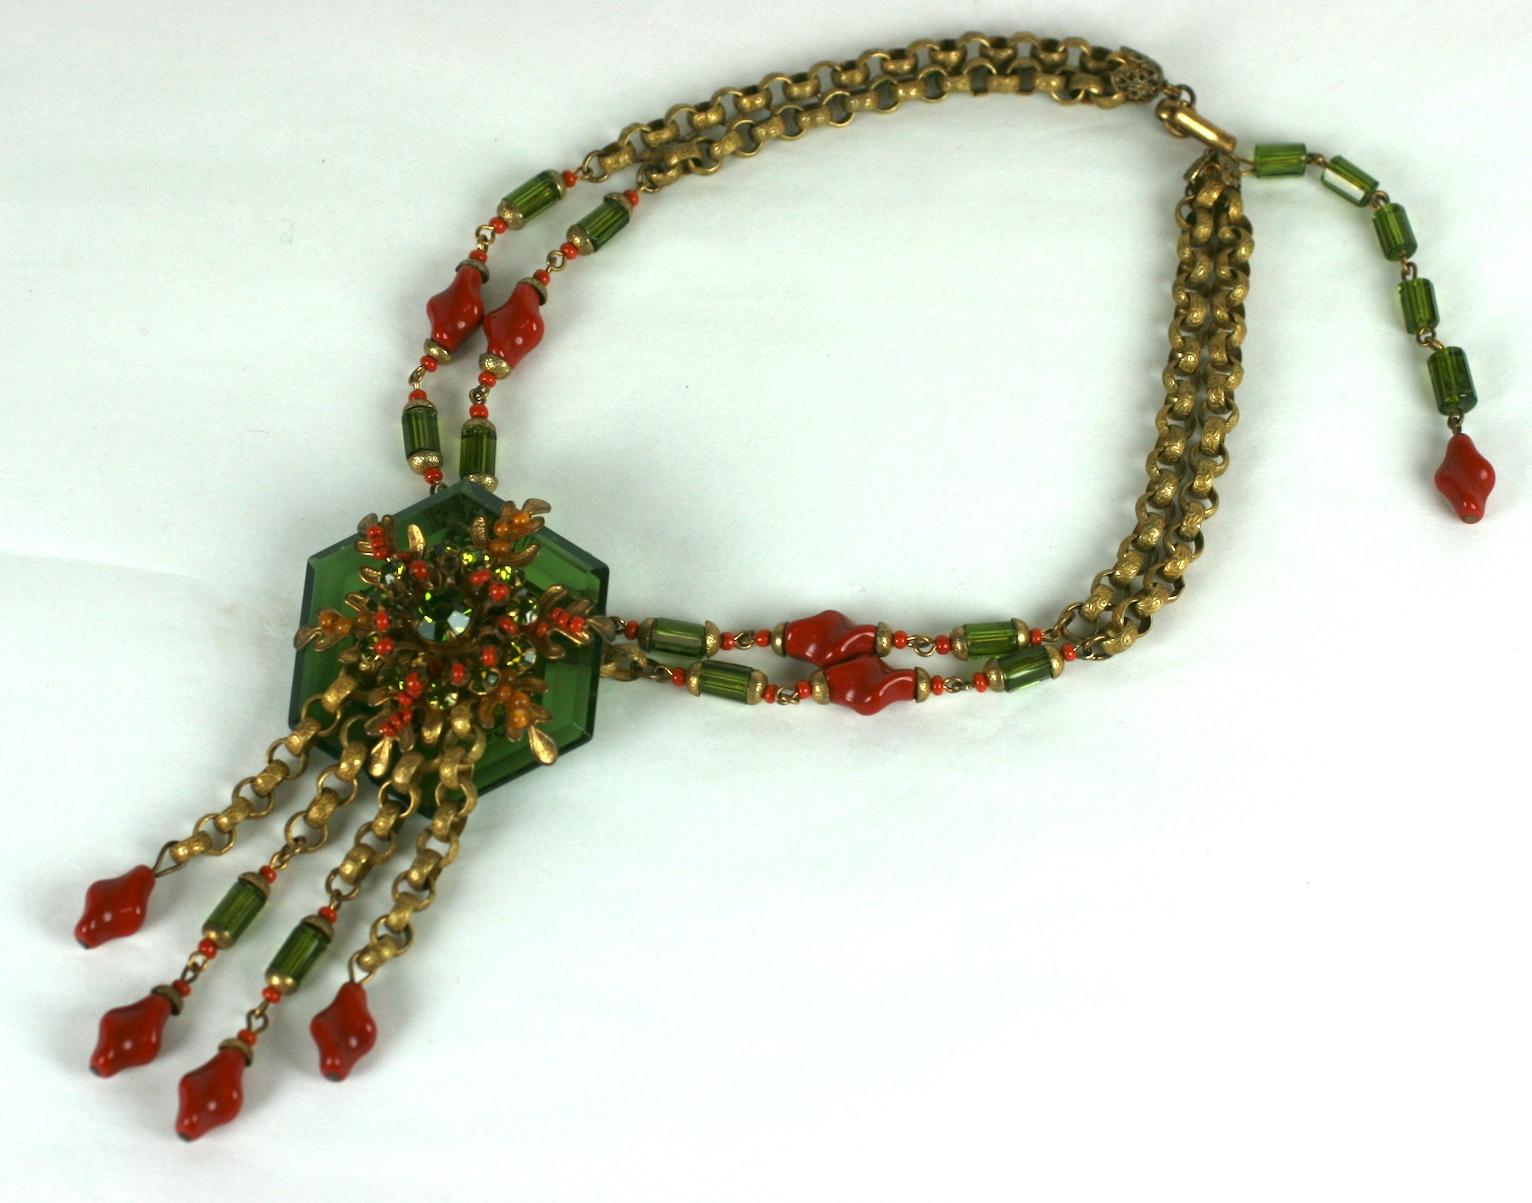 Ravissant collier en perles de cristal à facettes Miriam Haskell des années 1940. Un grand cristal hexagonal vert olive est boulonné sur une base filigranée signature de Haskell sur le pendentif. Une croissance dimensionnelle de feuilles d'algues